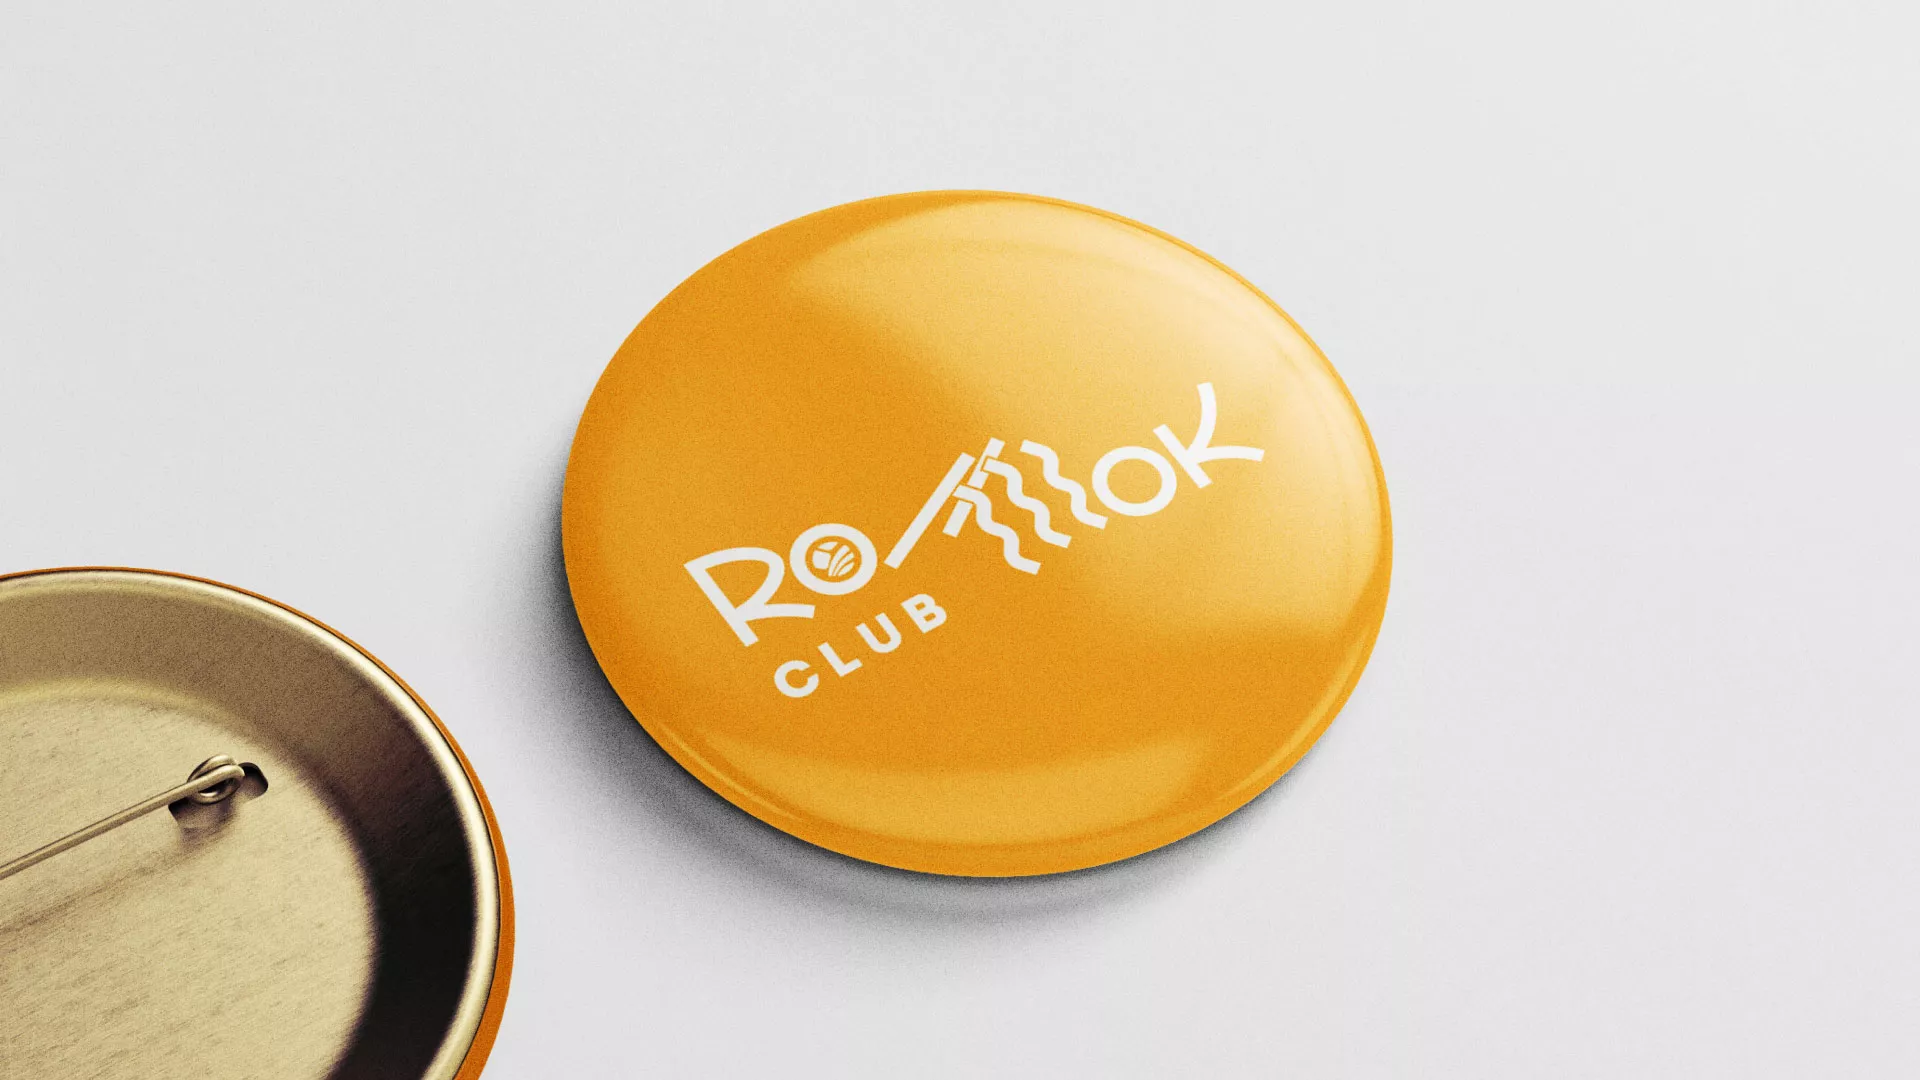 Создание логотипа суши-бара «Roll Wok Club» в Хилоке